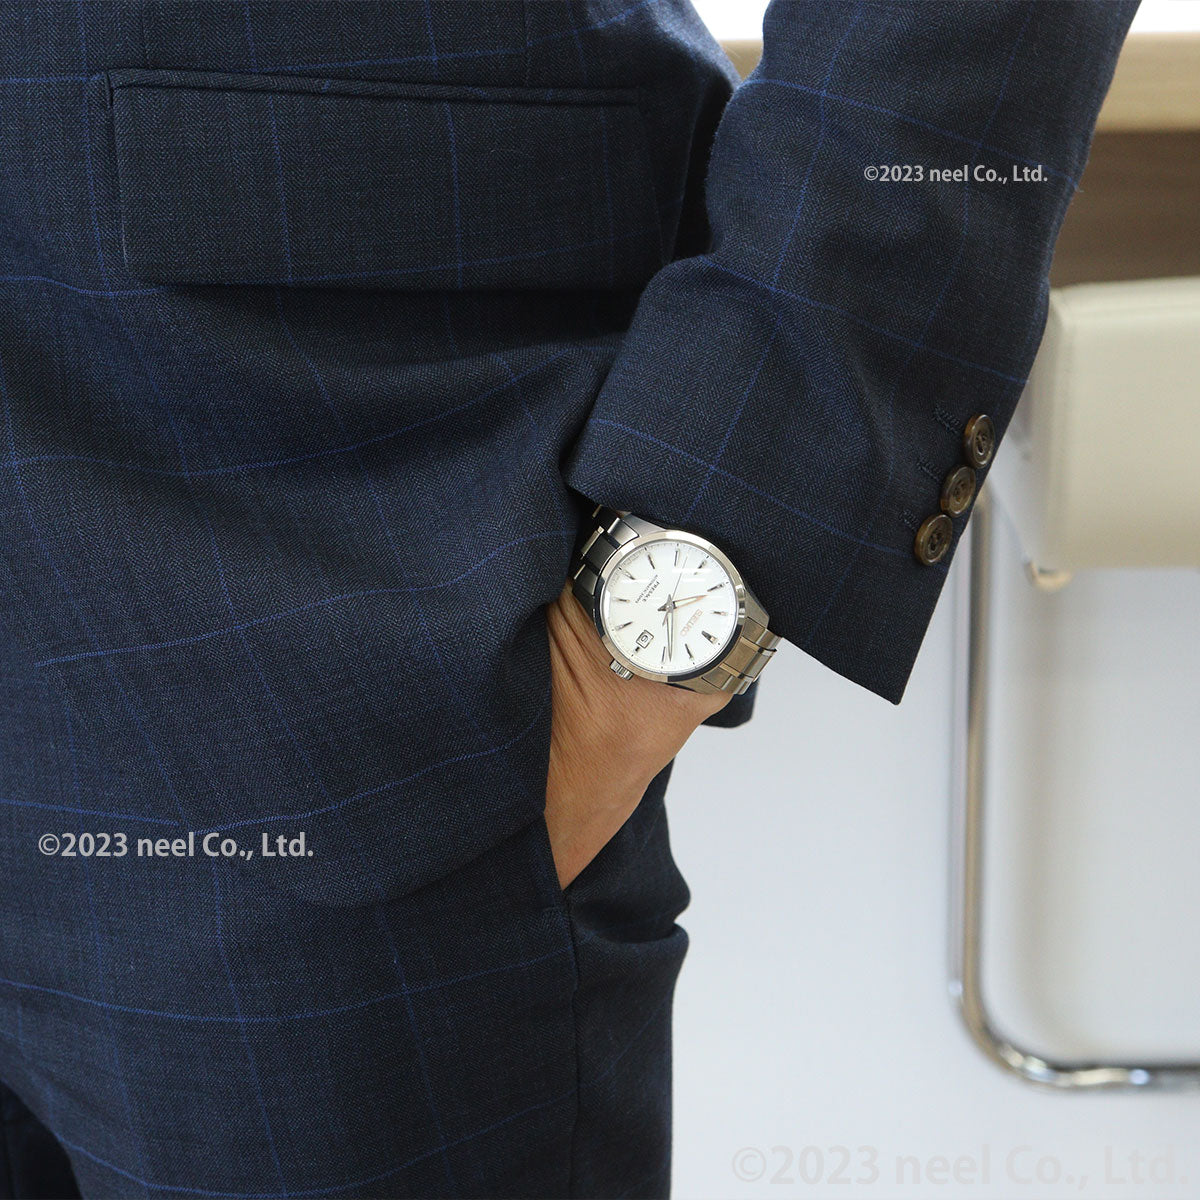 セイコー プレザージュ SEIKO PRESAGE 自動巻き コアショップ専用 流通限定モデル 腕時計 メンズ プレステージライン SARX115 Sharp Edged Series